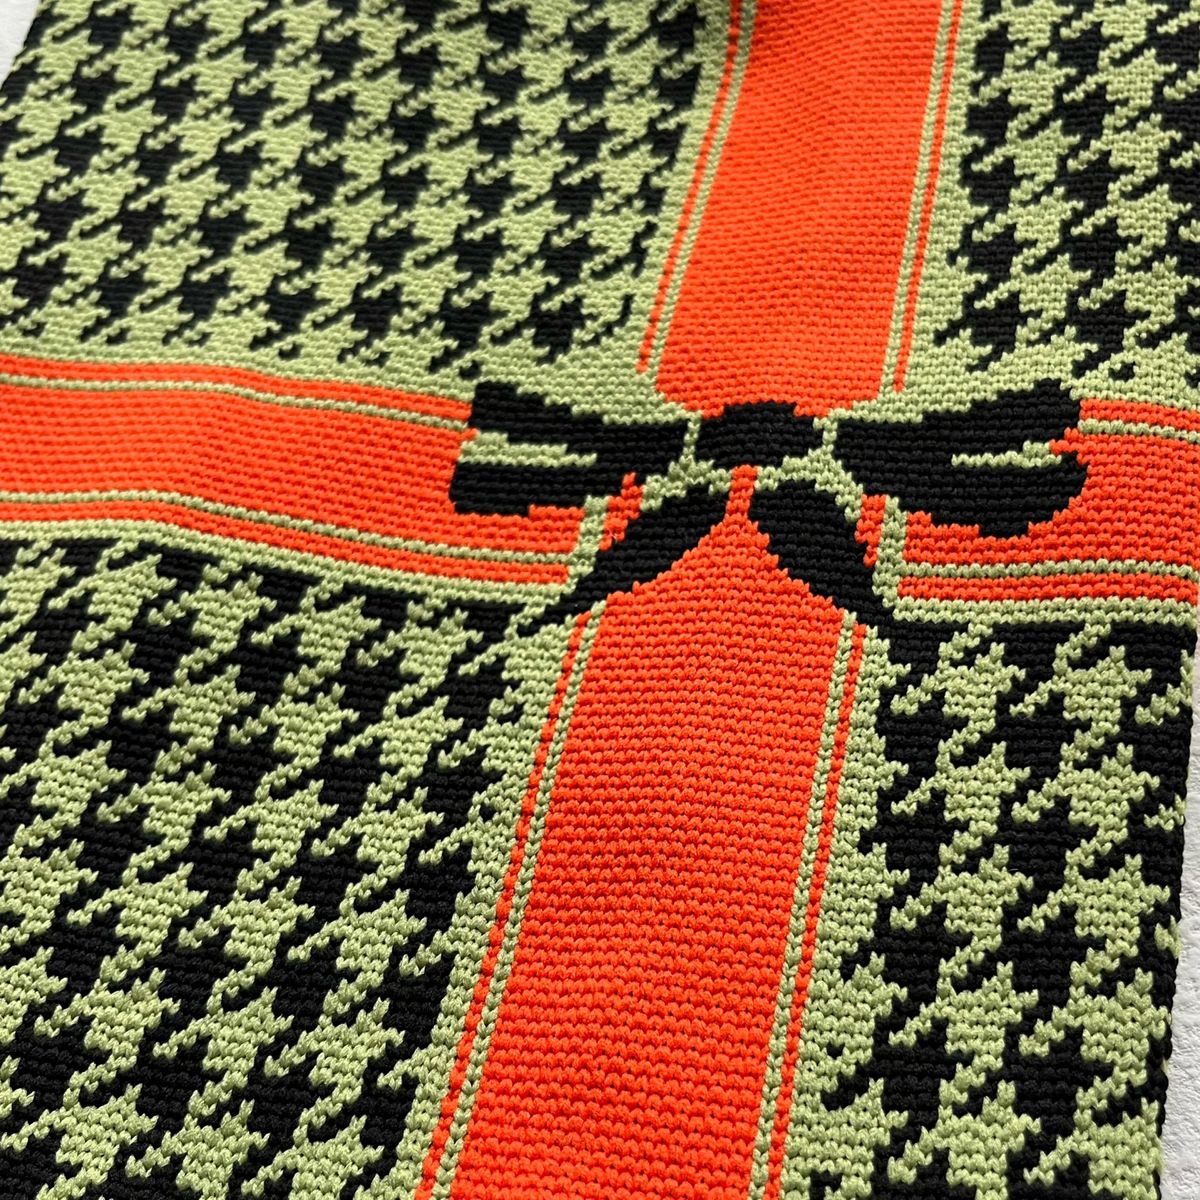 リボン 千鳥格子 ポーチ クラッチバッグ 手持ちバッグ お弁当袋 女性 最新 可愛い ハンドバッグ 韓国 編みバッグ